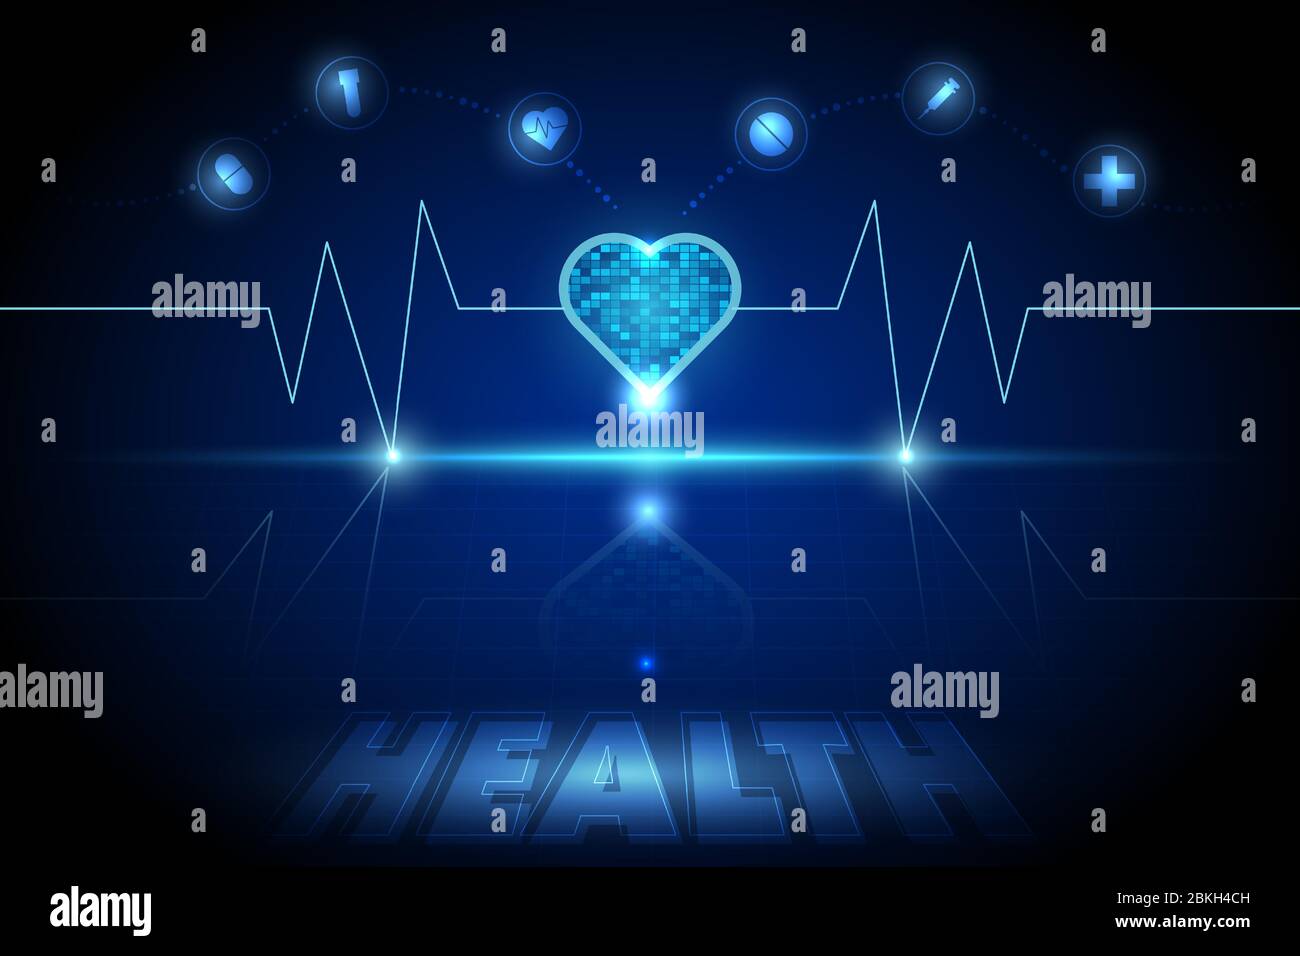 Abstrakt dunkelblau futuristische Technologie und Gesundheitswesen Hintergrund mit Glitzereffekt und medizinischen Element Symbol. Stock Vektor